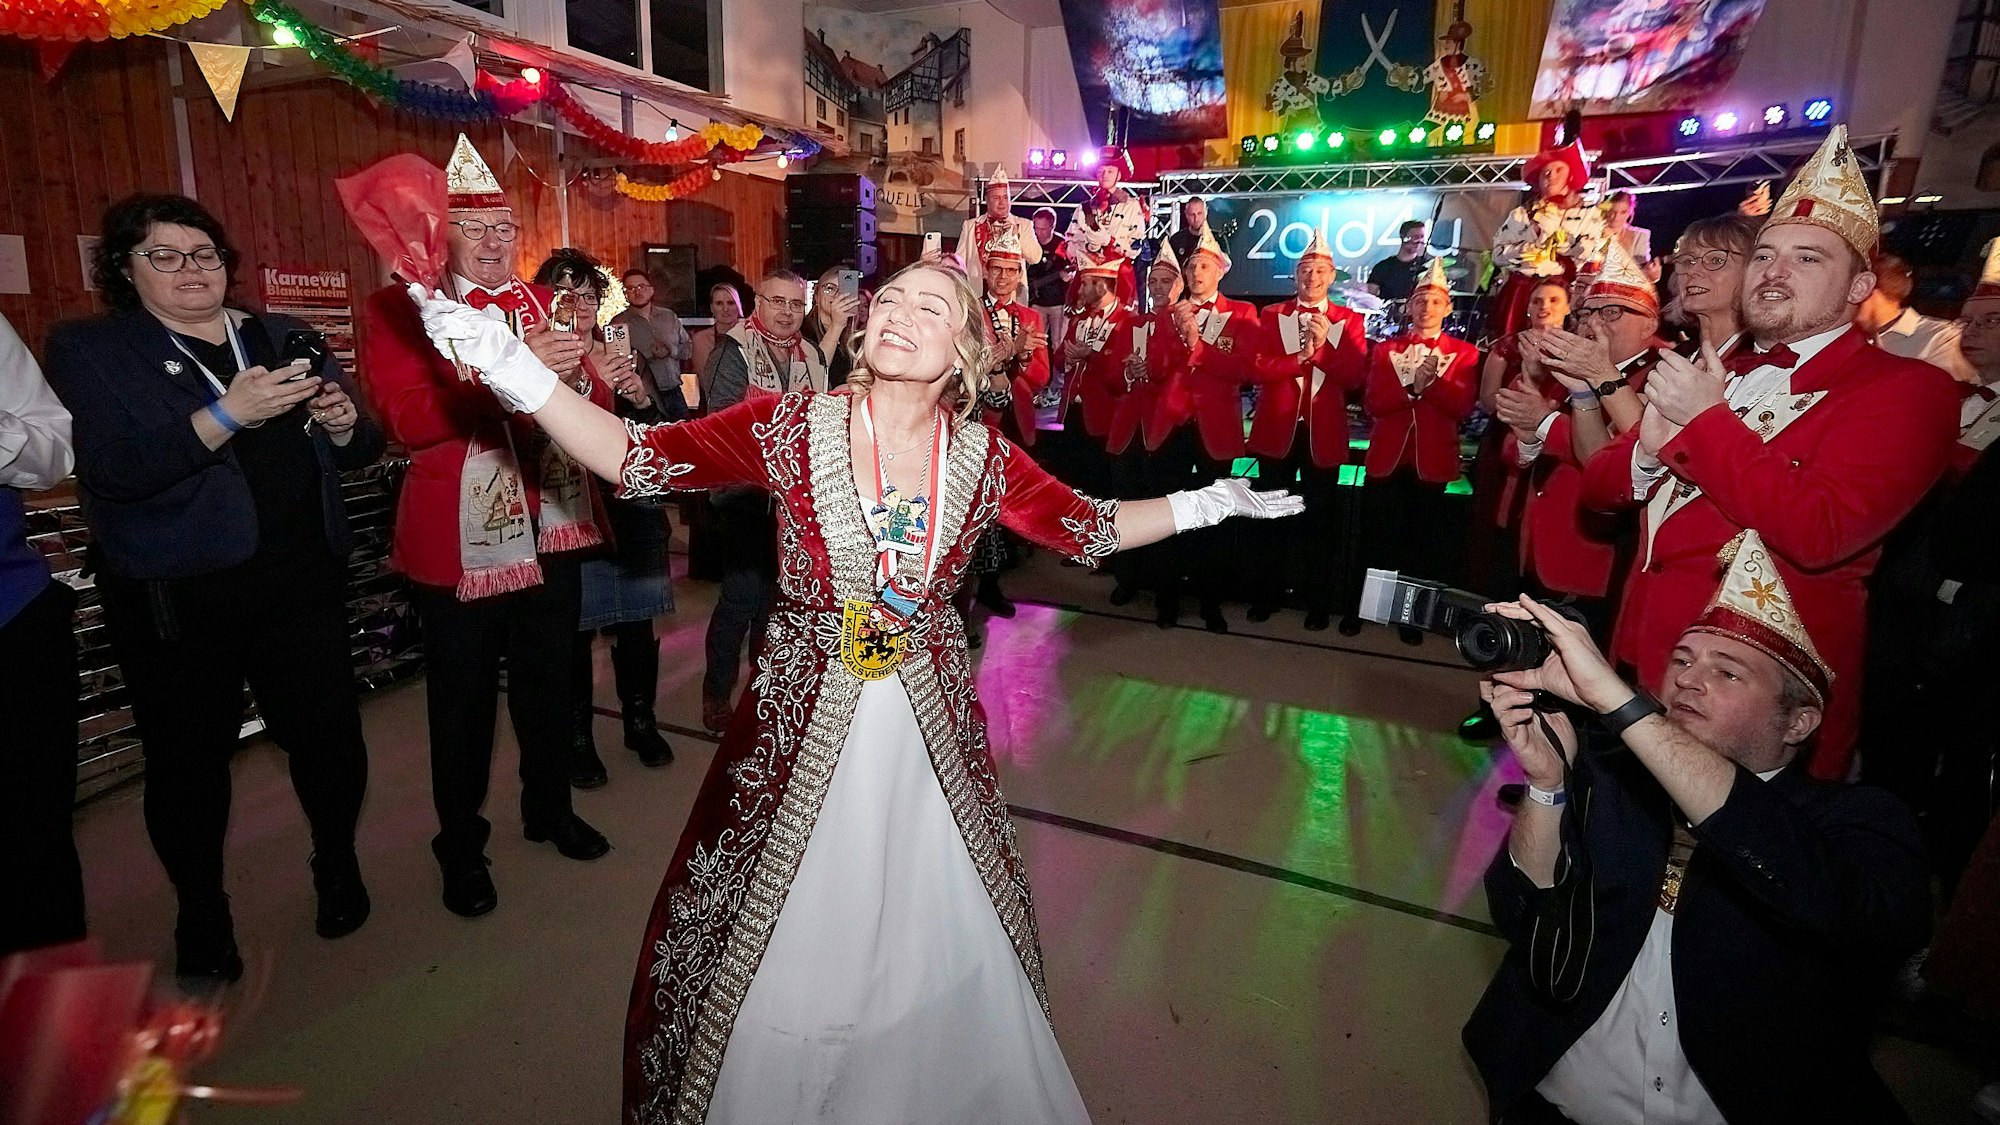 Prinzessin Dilek lässt sich feiern und genießt den Moment. Sie ist umringt von den Blankenheimer Karnevalisten, die im Takt zur Musik klatschen.